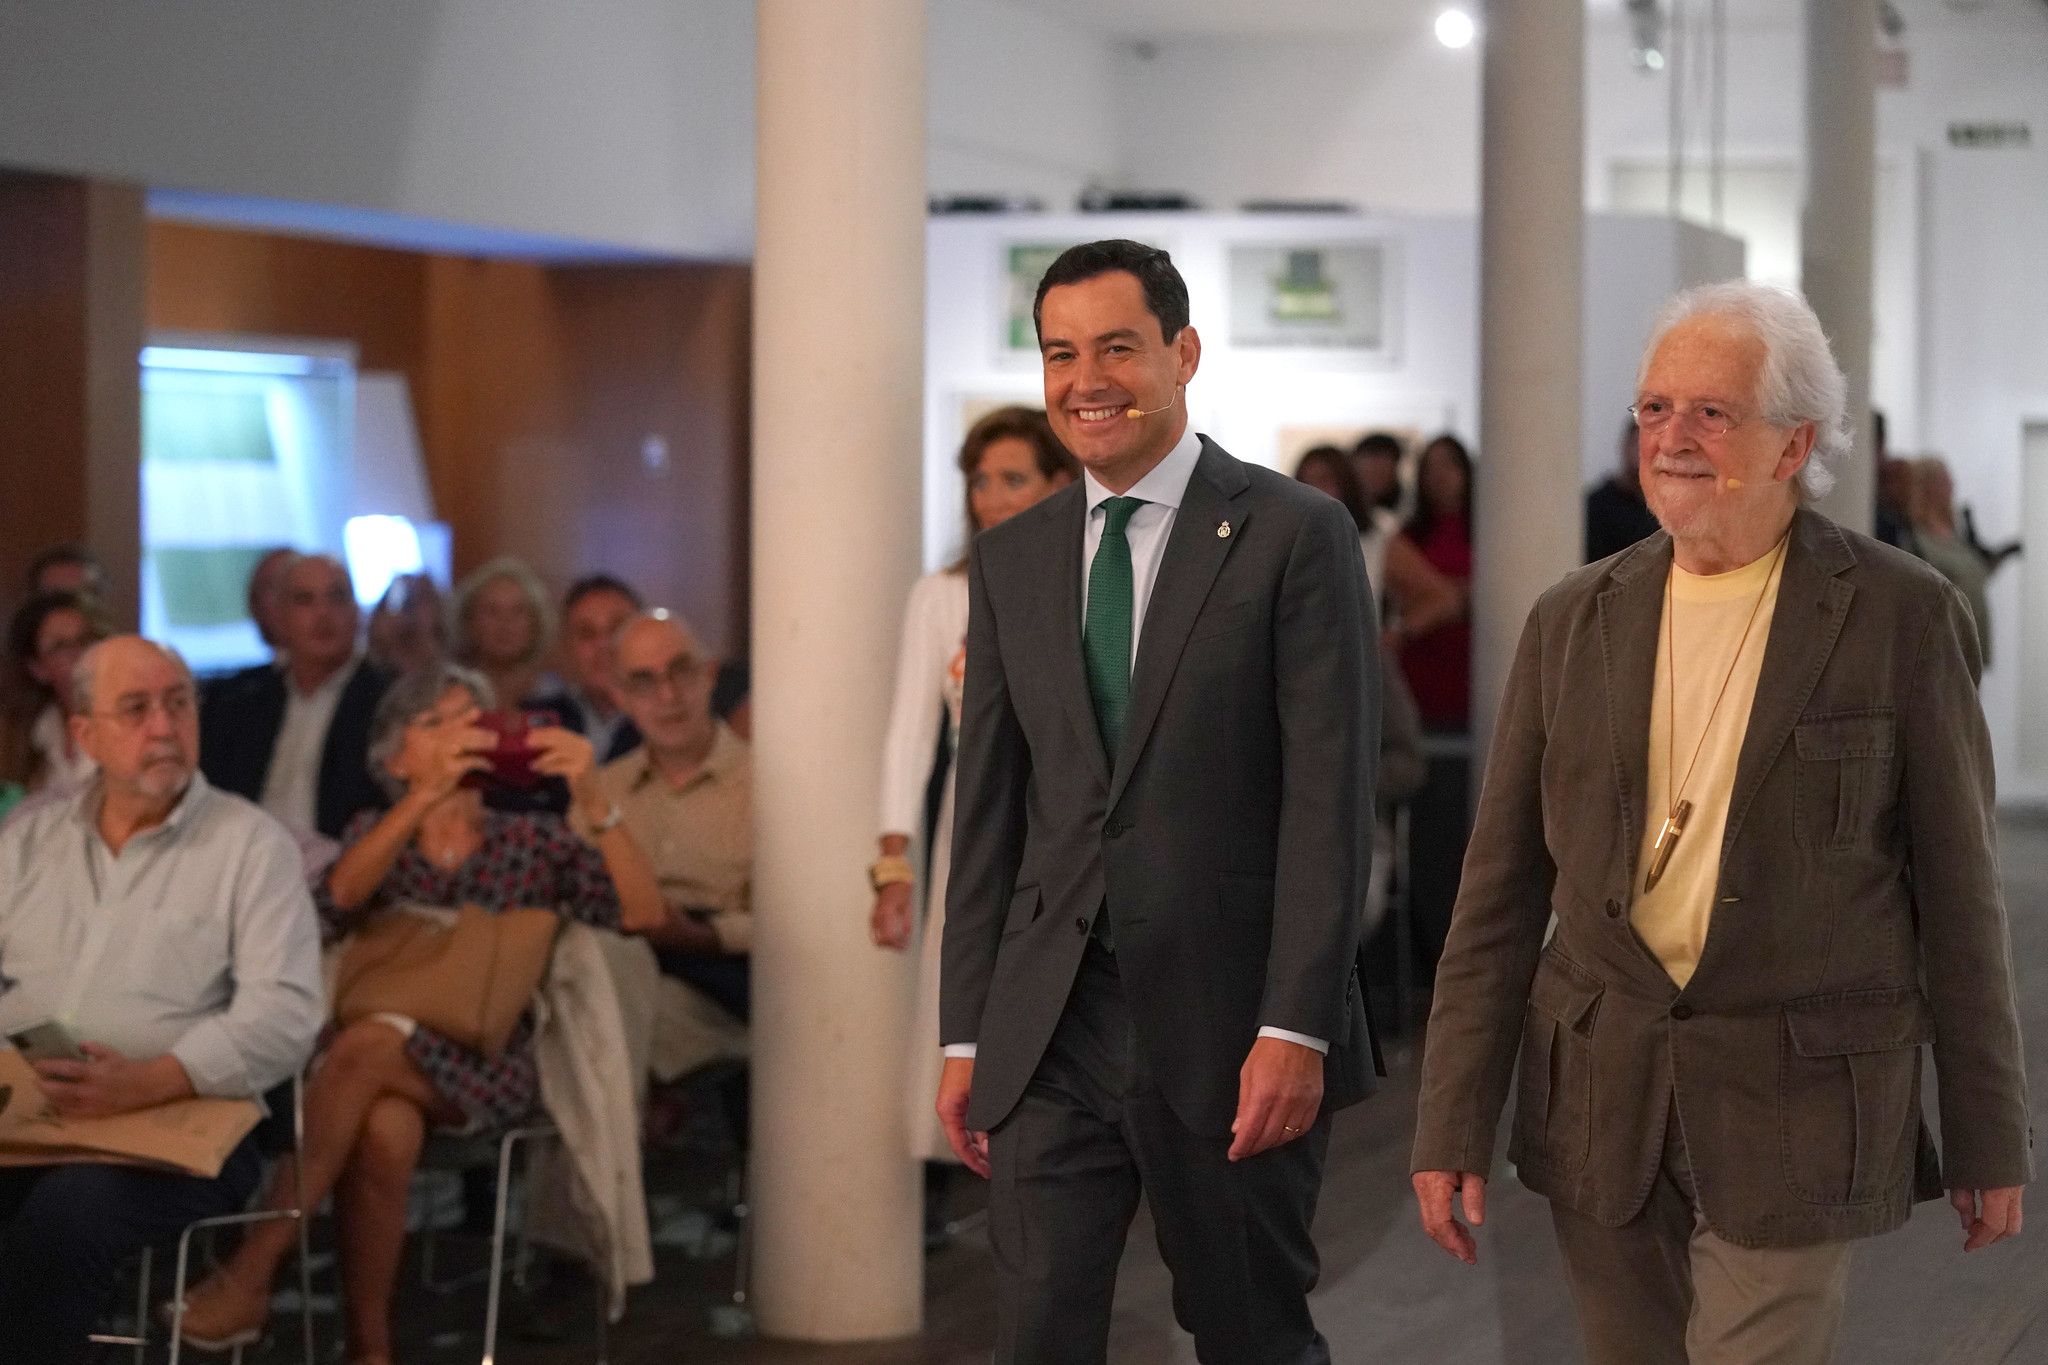 Coloquio entre Alejandro Rojas Marcos y Juan Manuel Moreno Bonilla con motivo de la presentación del libro de José Luis Villar 'Por un poder andaluz'.